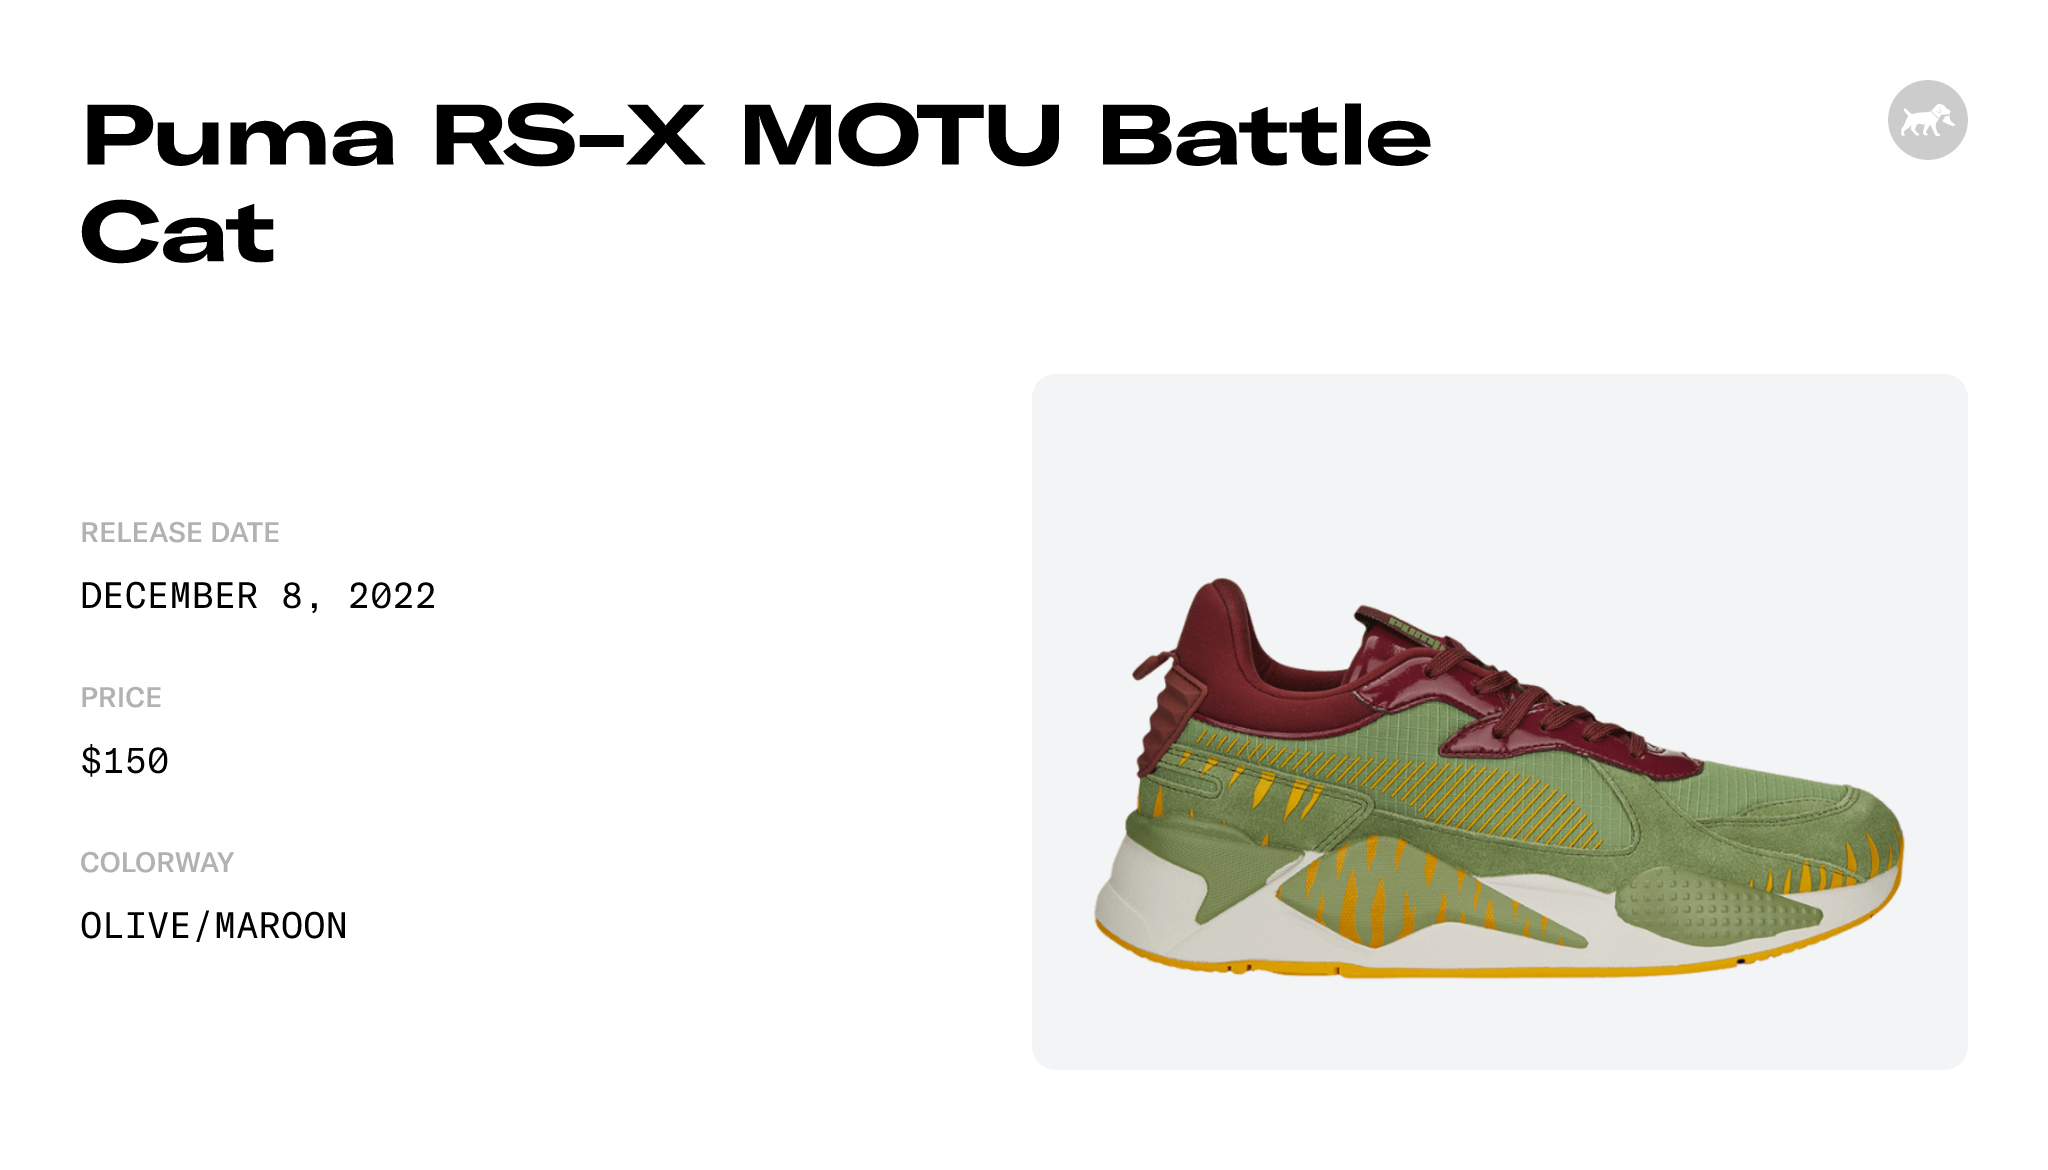 Puma RS-X MOTU Battle Cat Raffles and Release Date